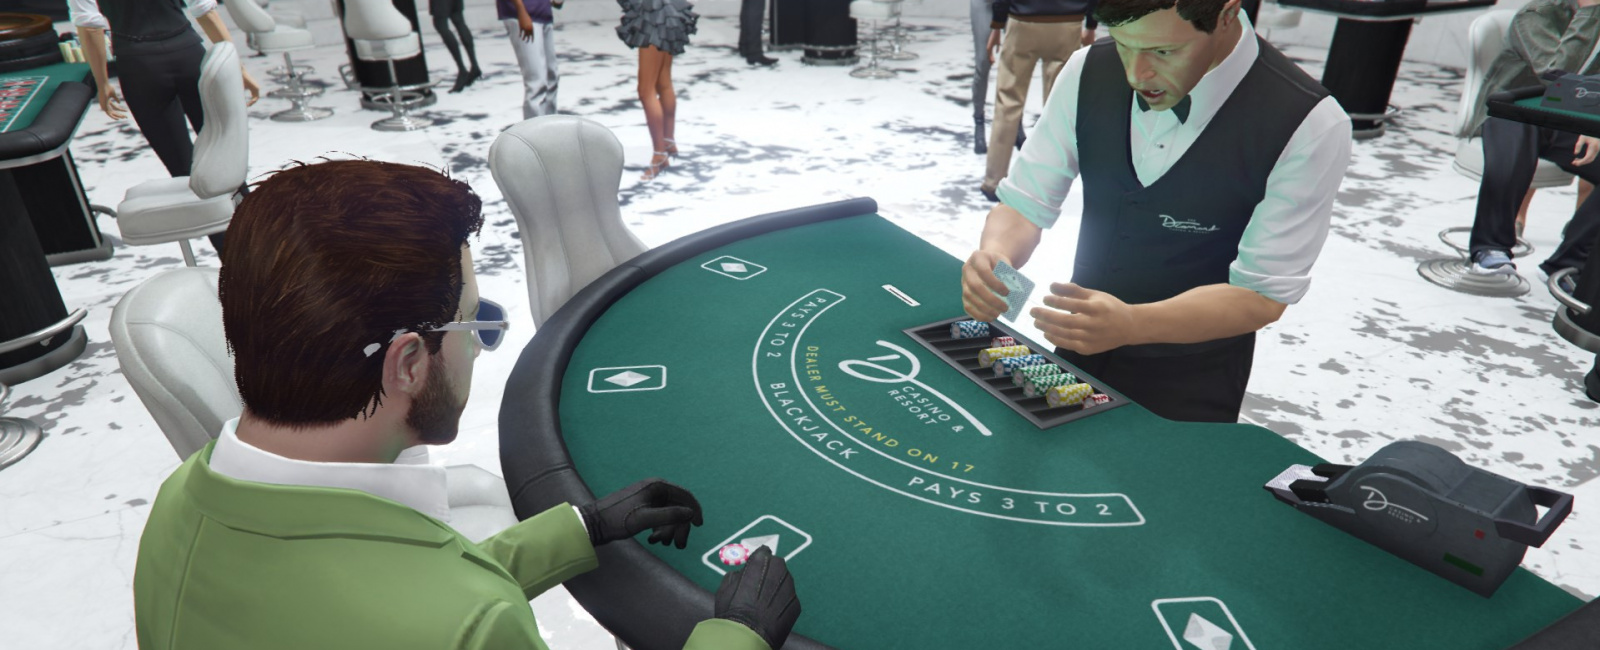 Гта онлайн заработок денег в казино лего ниндзяго игровой автомат джея купить